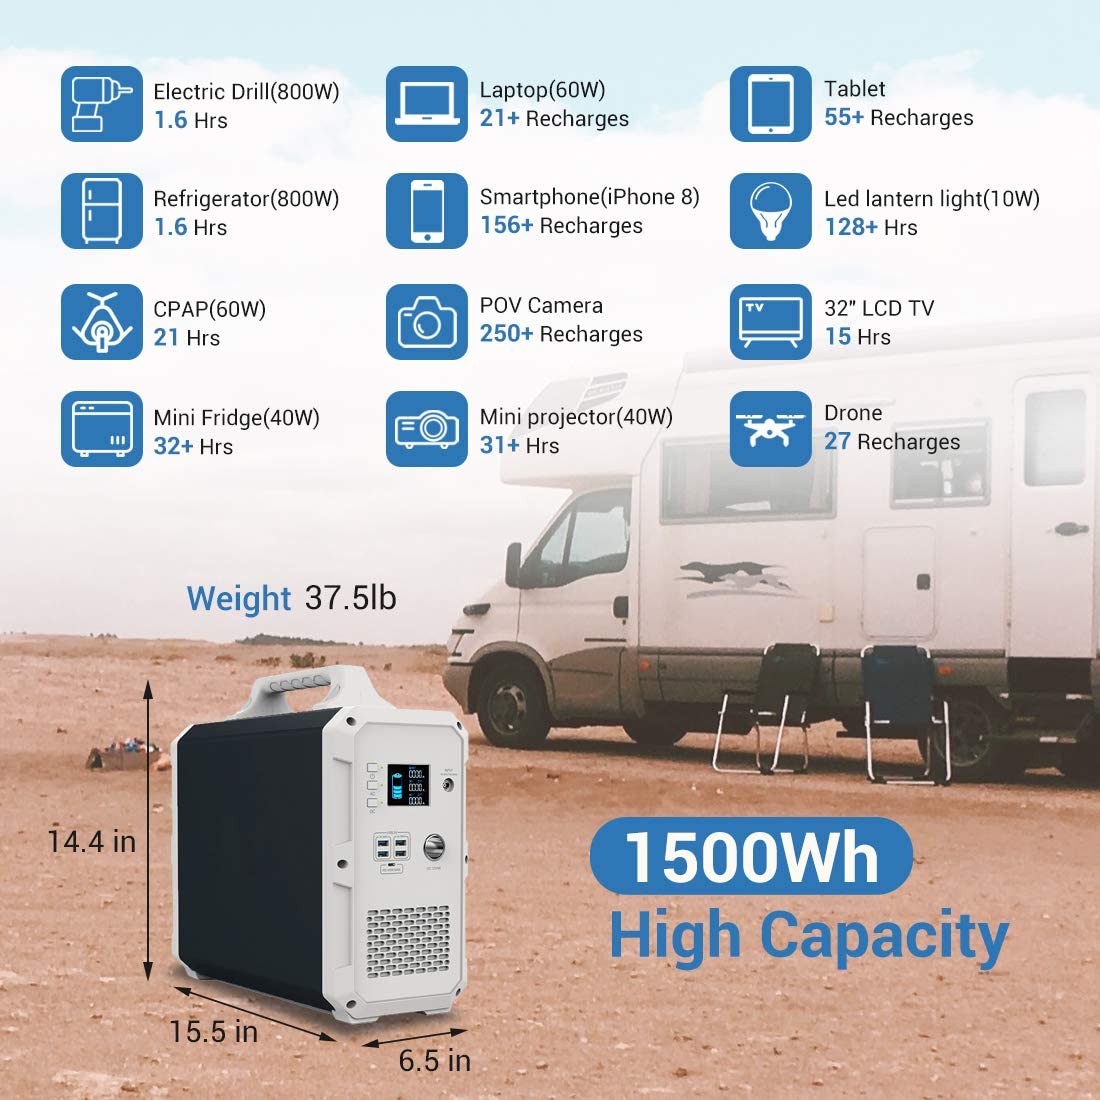 El Bluetti EB150 tiene 1500Wh de alta capacidad de bateria.